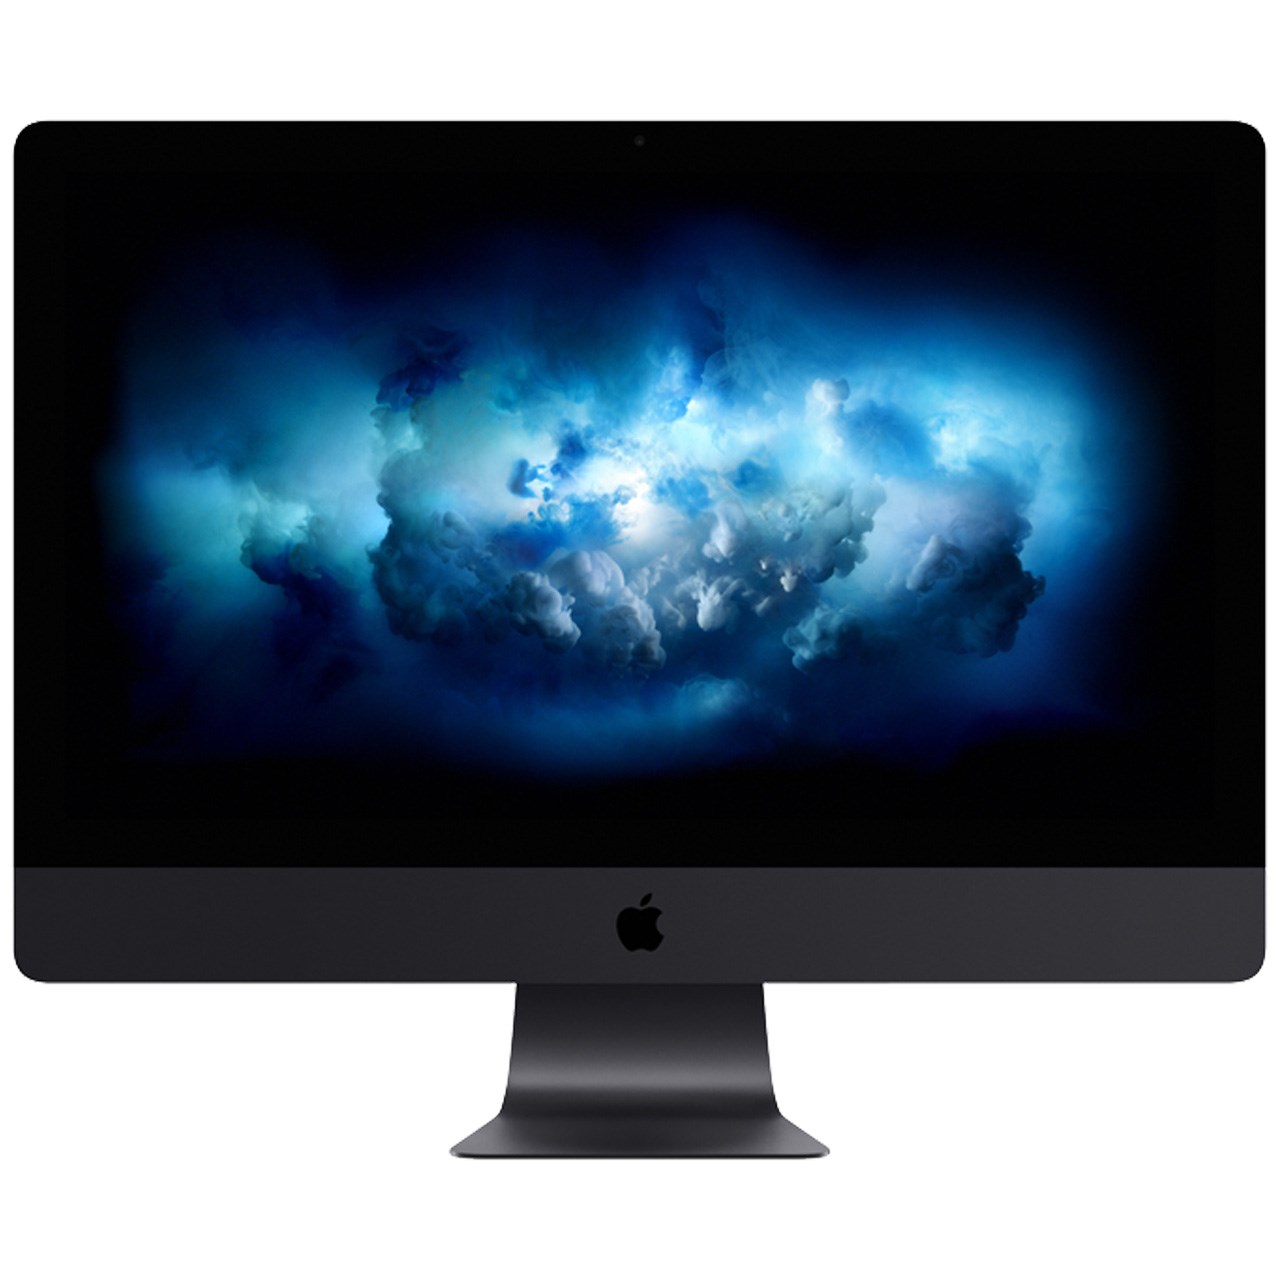 کامپیوتر همه کاره 27 اینچی اپل مدل iMac Pro 2017 با صفحه نمایش 5K رتینا